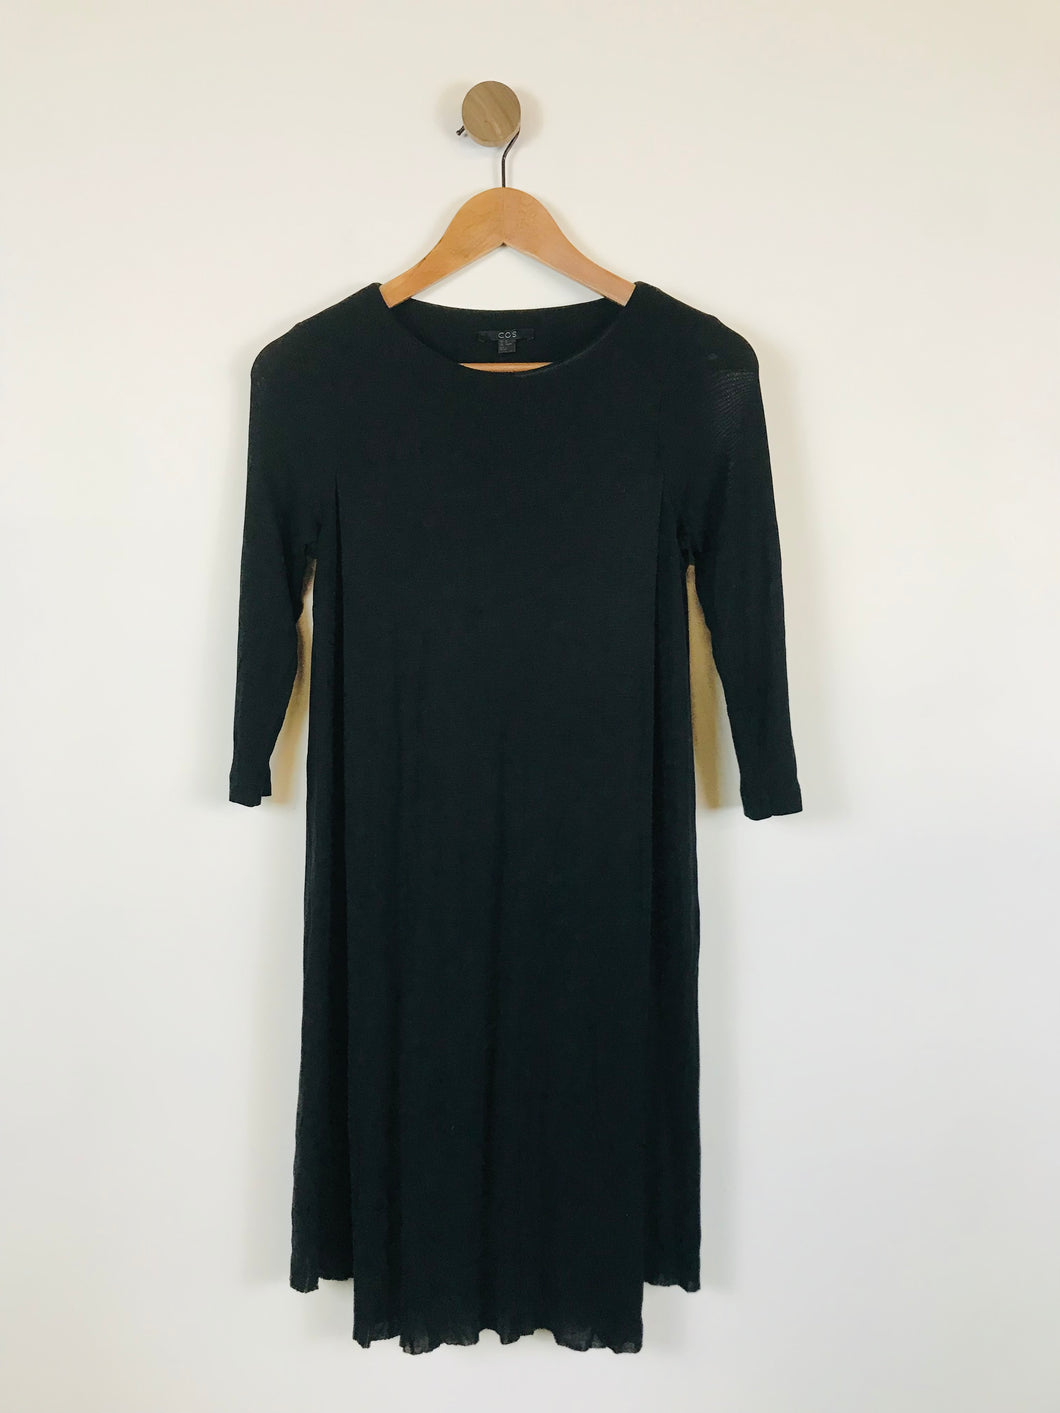 COS Women's Layered Shift Dress | XS UK6-8 | Black